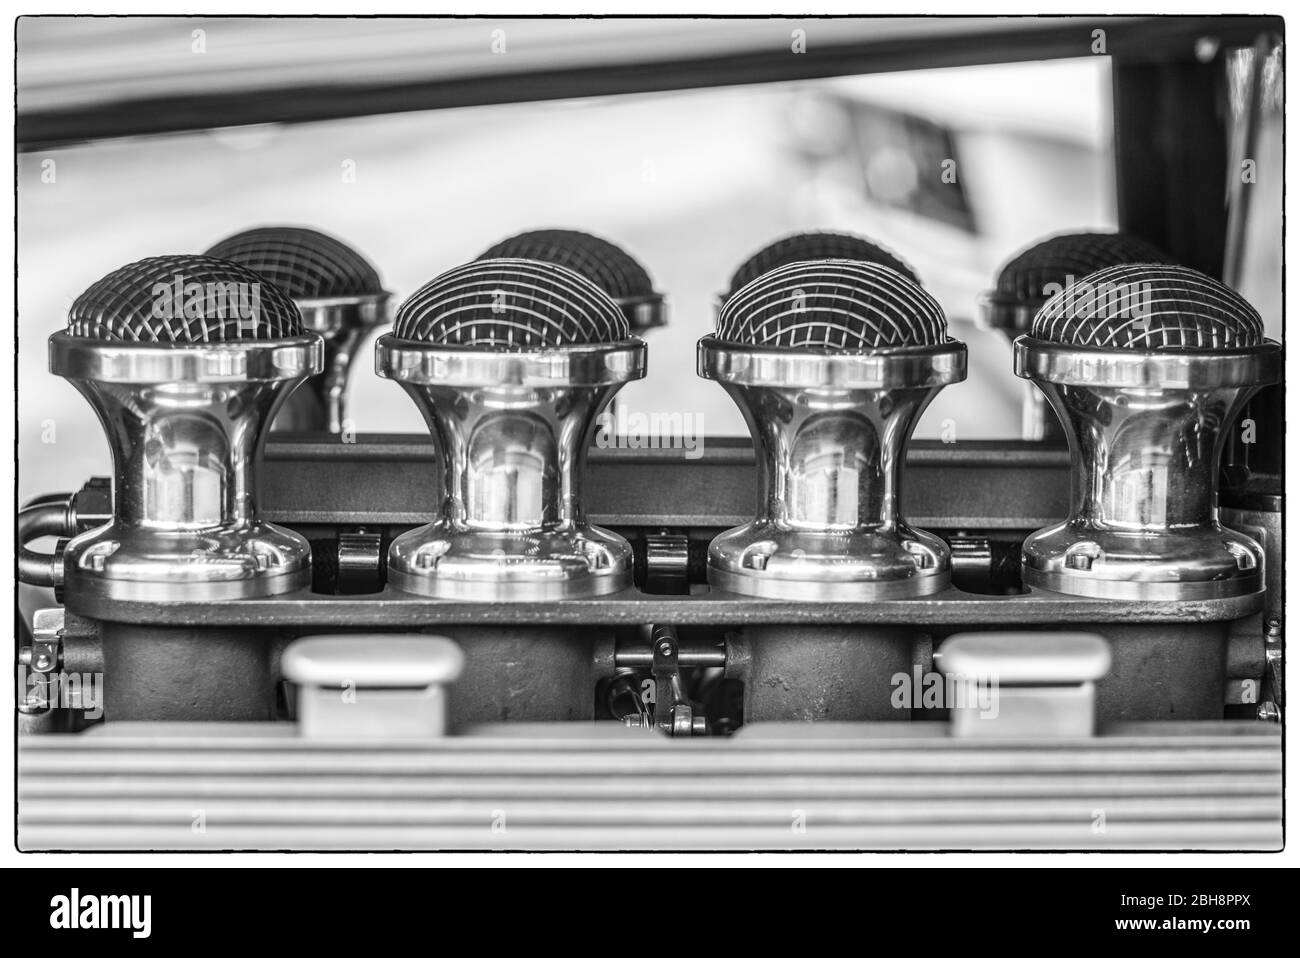 USA, Nouvelle-Angleterre, Massachusetts, Cape Ann, Gloucester, voiture ancienne, barres de coupe à tige chaude des années 1950 Banque D'Images